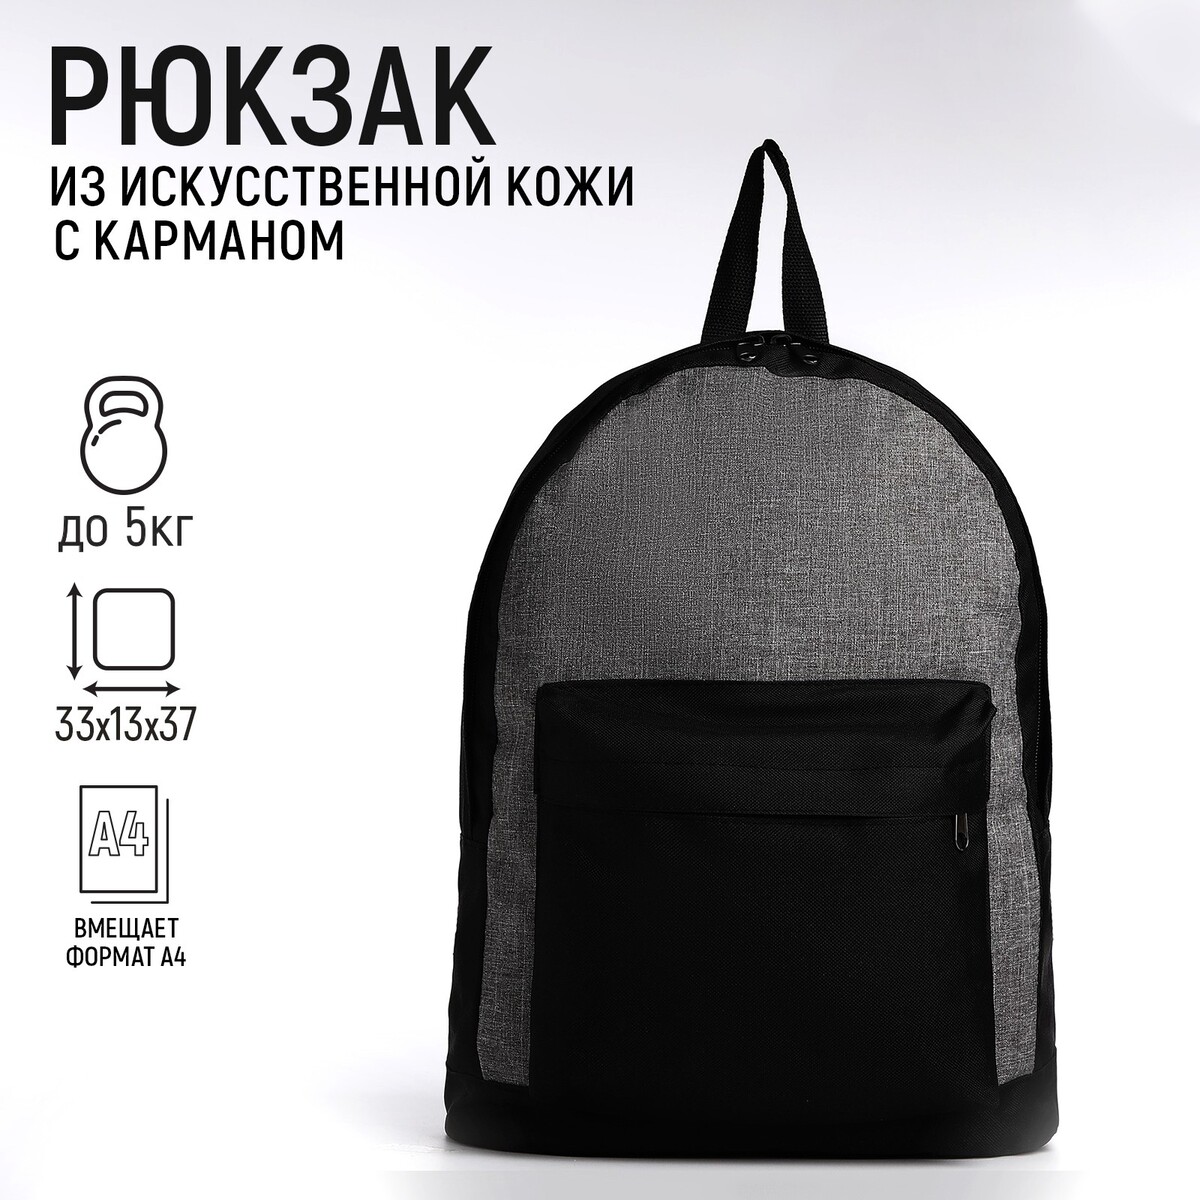 Рюкзак на молниях, 3 наружных кармана, цвет серый/черный NAZAMOK